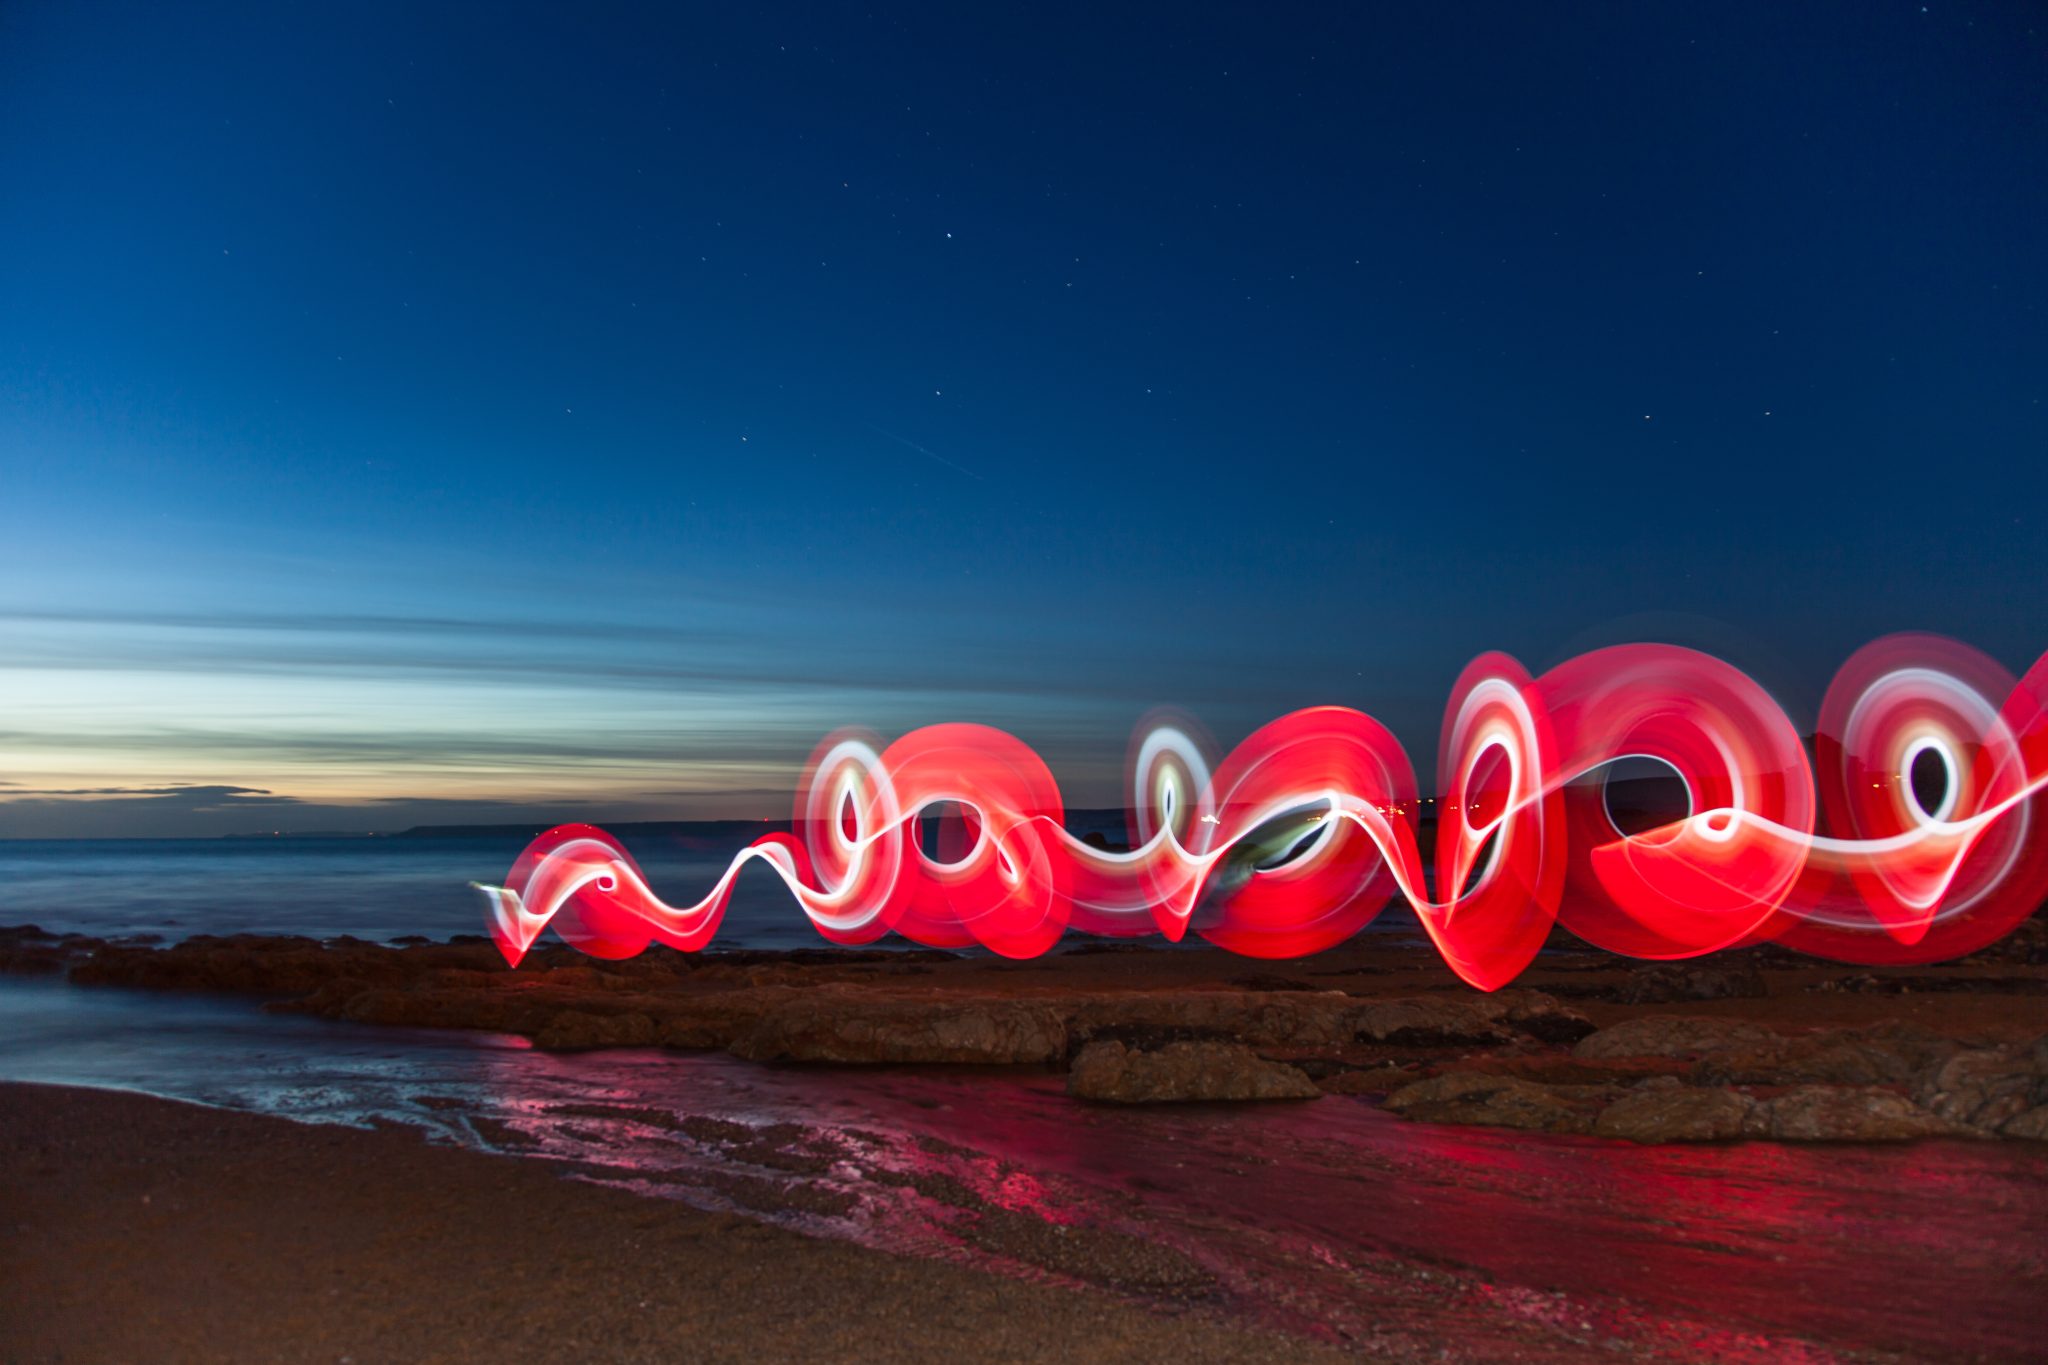 Brand image - red light spiral on an ocean shore - Lenovo StoryHub